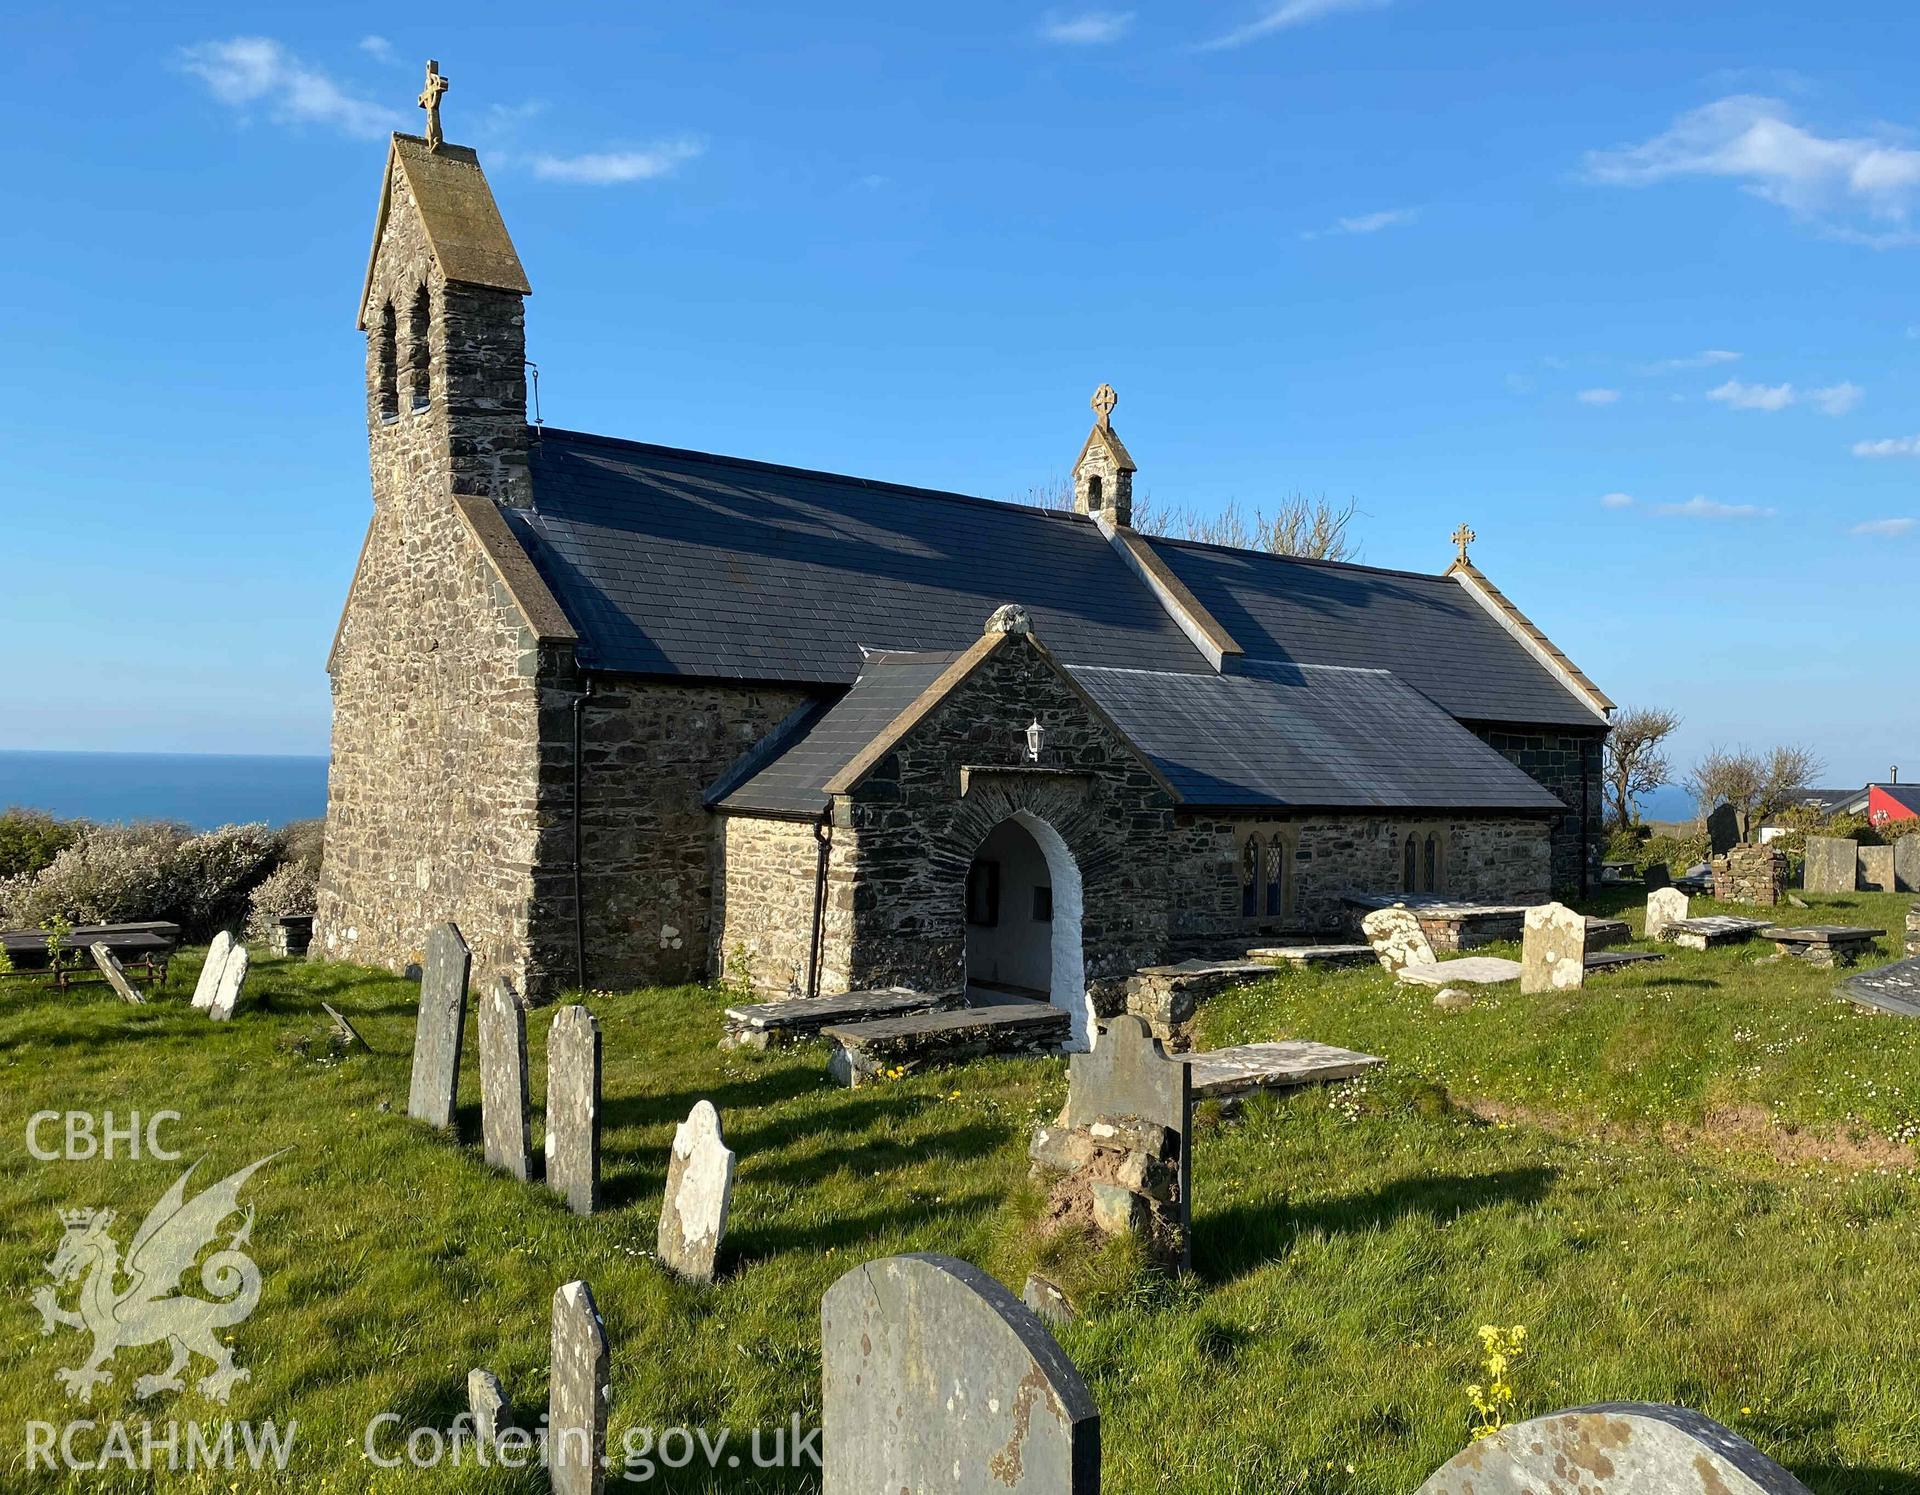 Digital photograph of St Gwyndaf's Church, Llanwnda, produced by Paul Davis in 2020